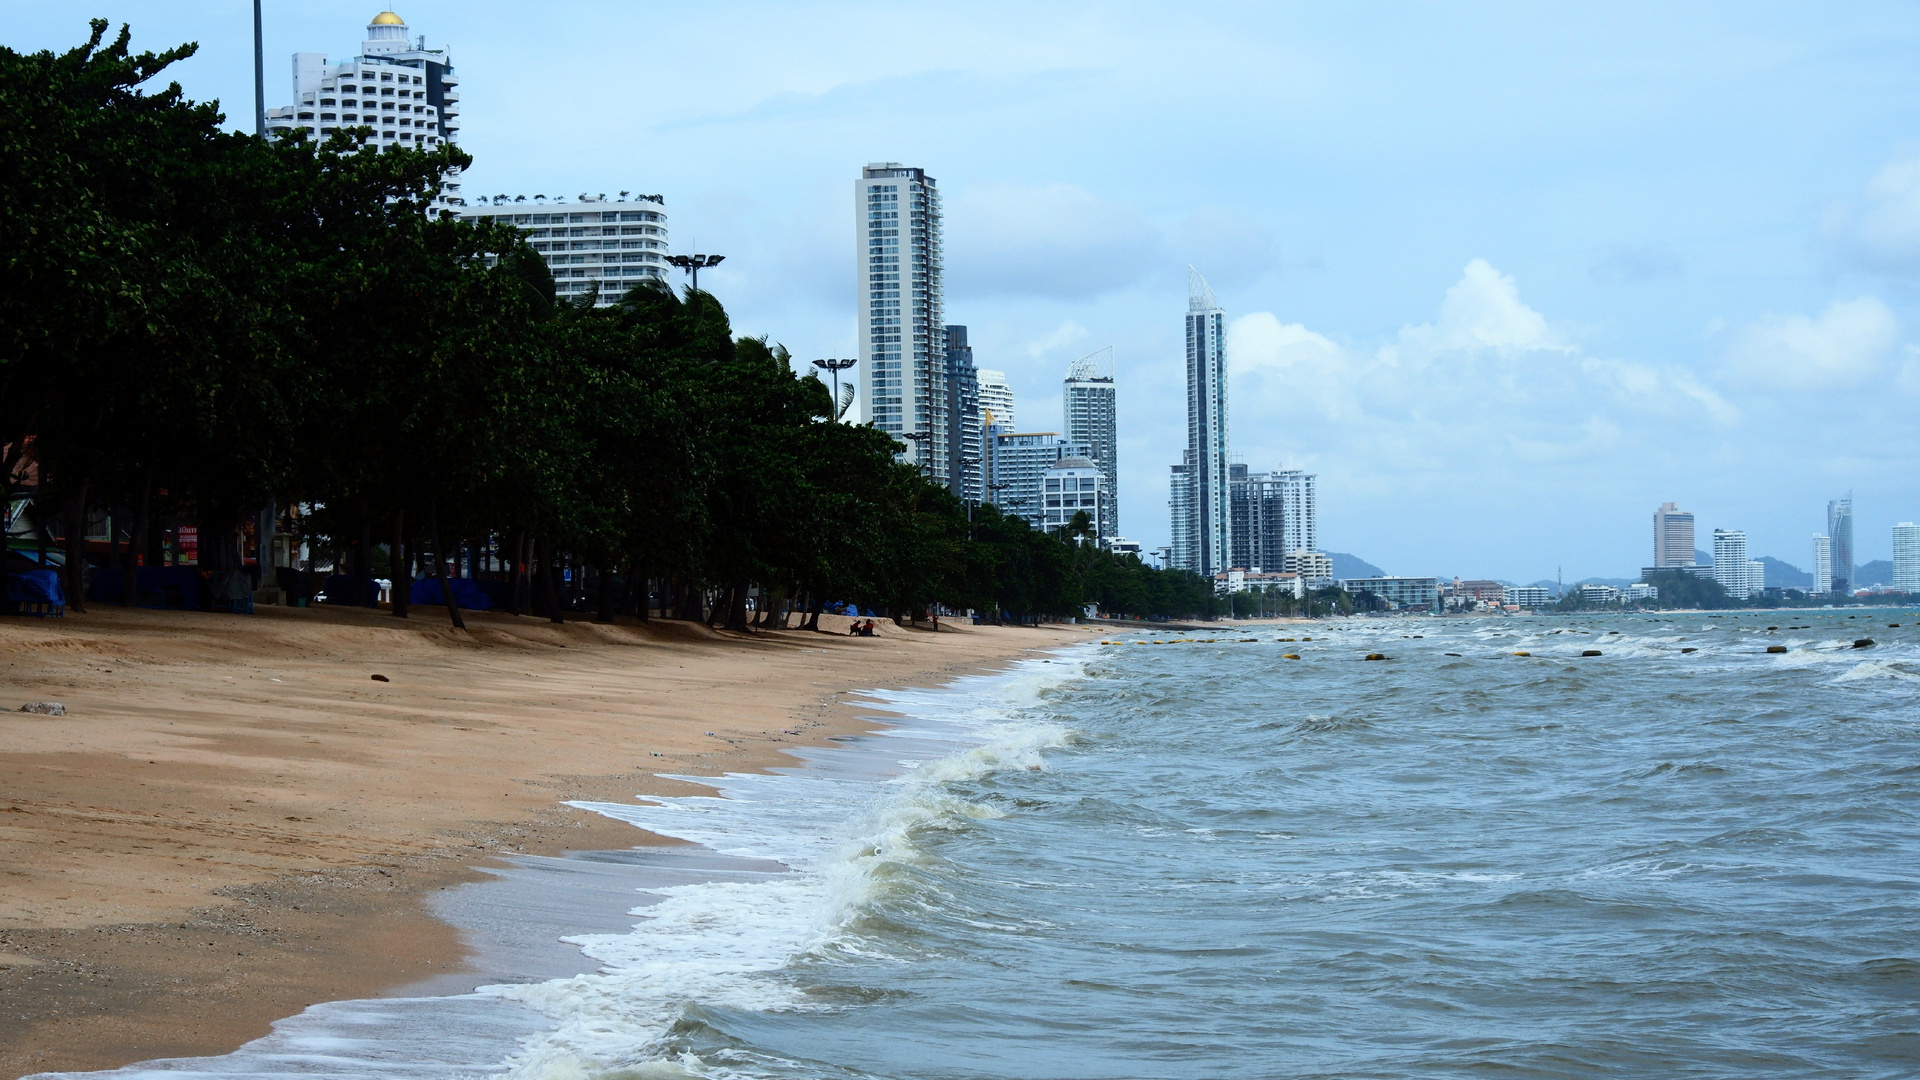 Strand von Pattaya, Thailand (Jomtien) während der Corona Pandemie